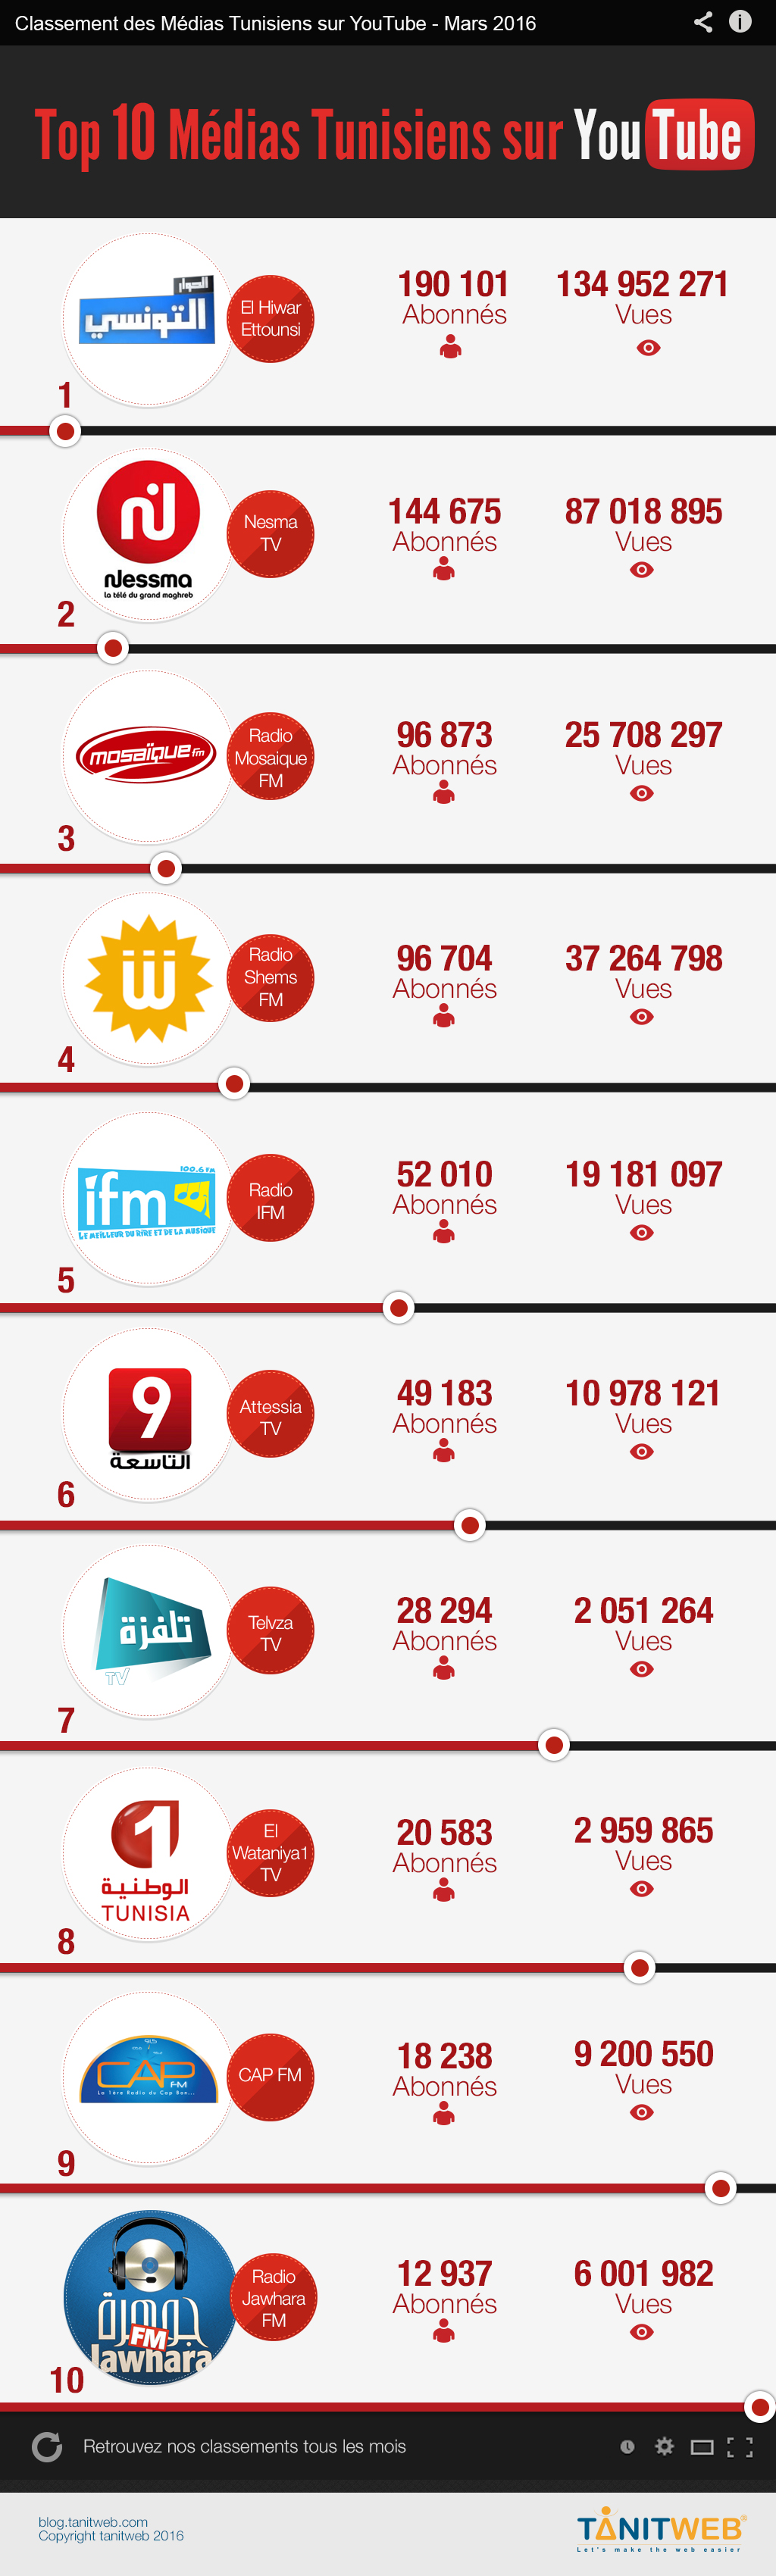 Classement média tunisiens sur youtube 2016